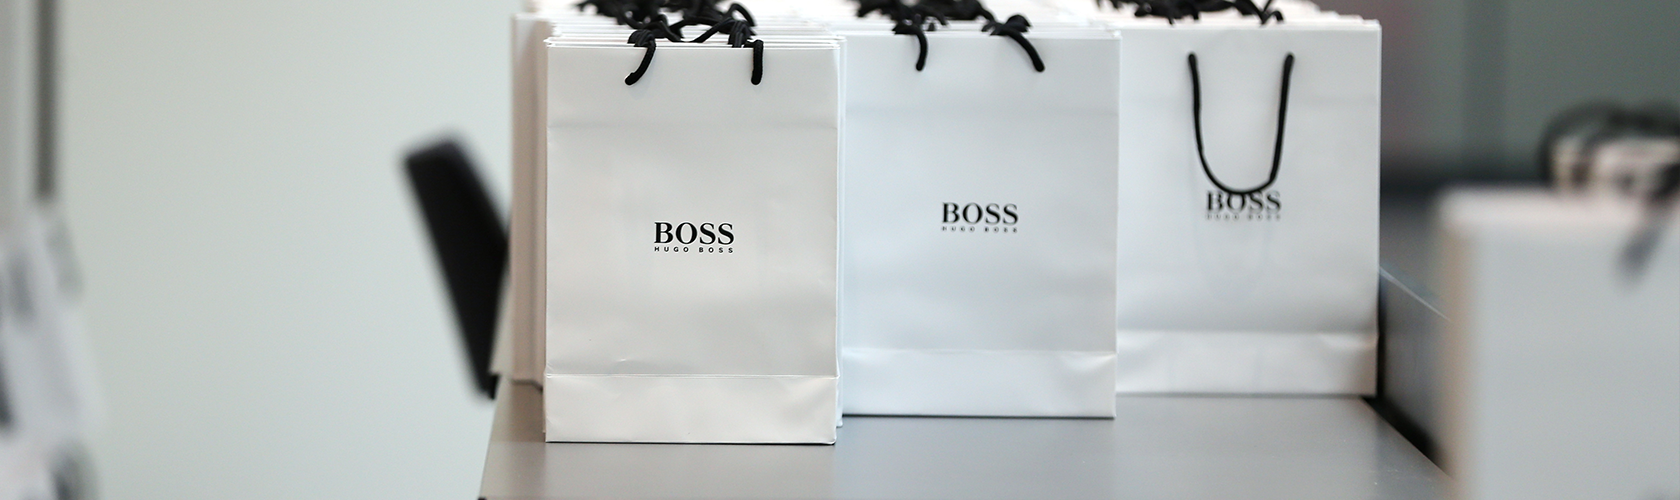 hugo boss shopping bag